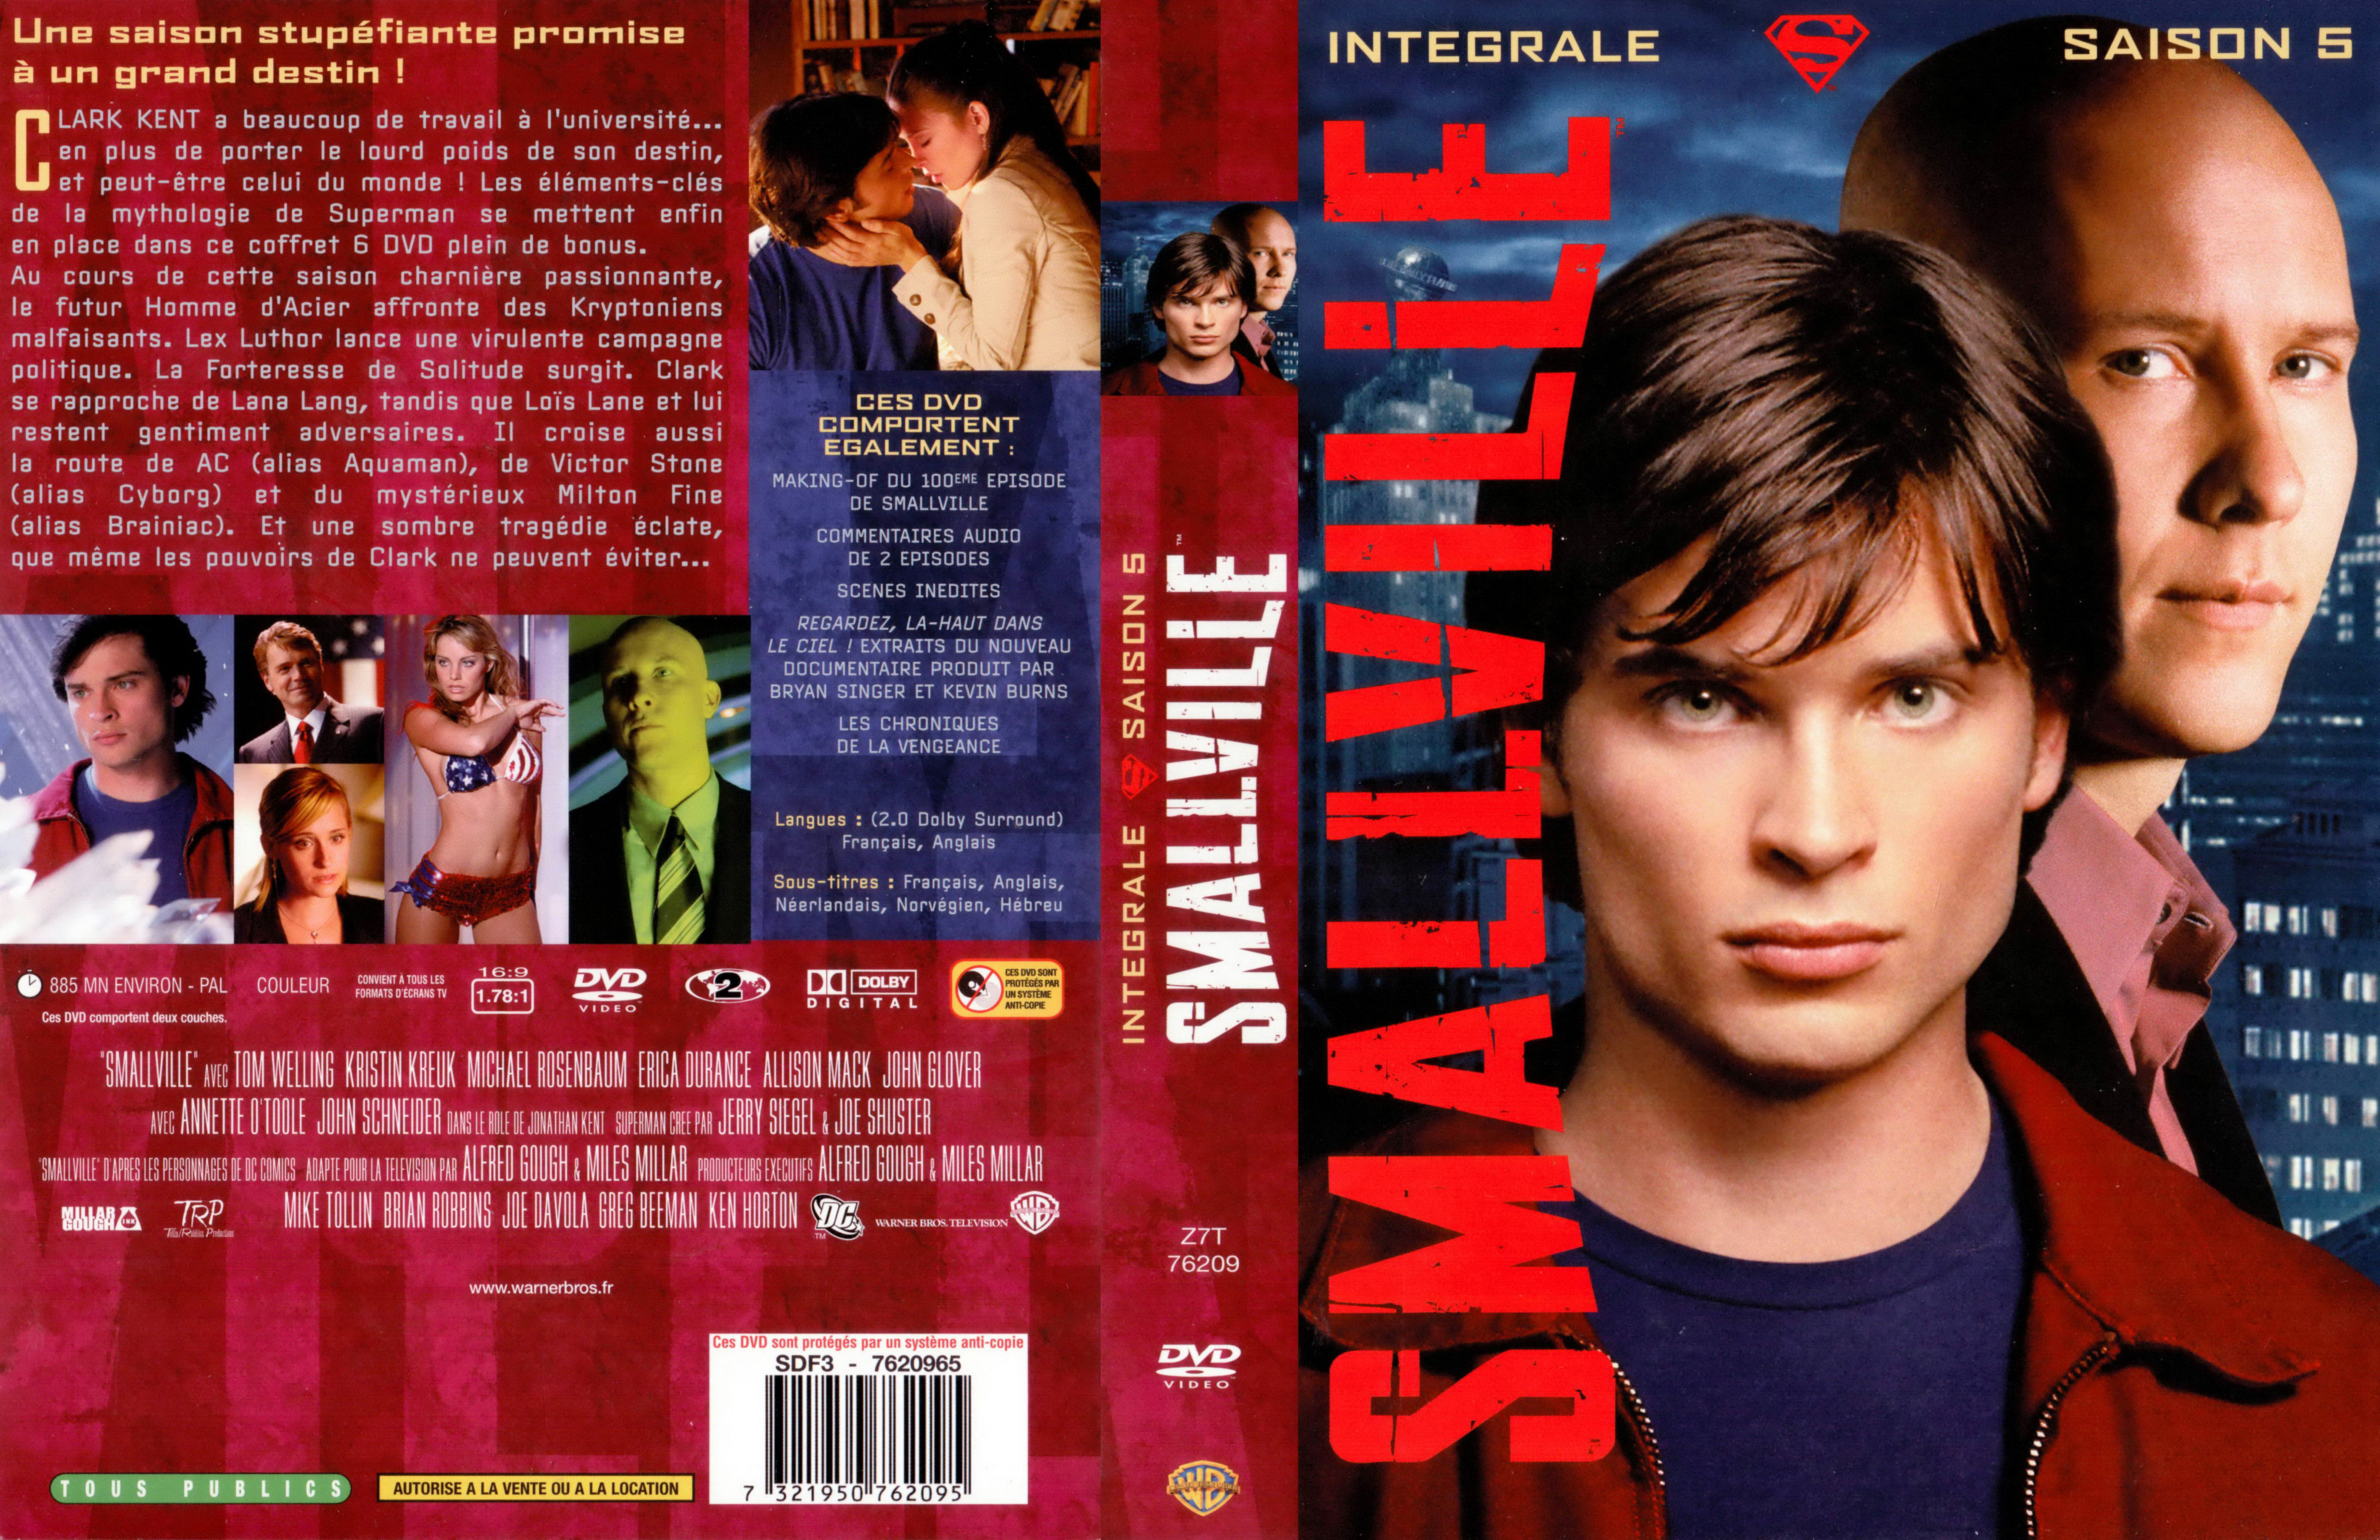 Jaquette DVD Smallville saison 5 COFFRET